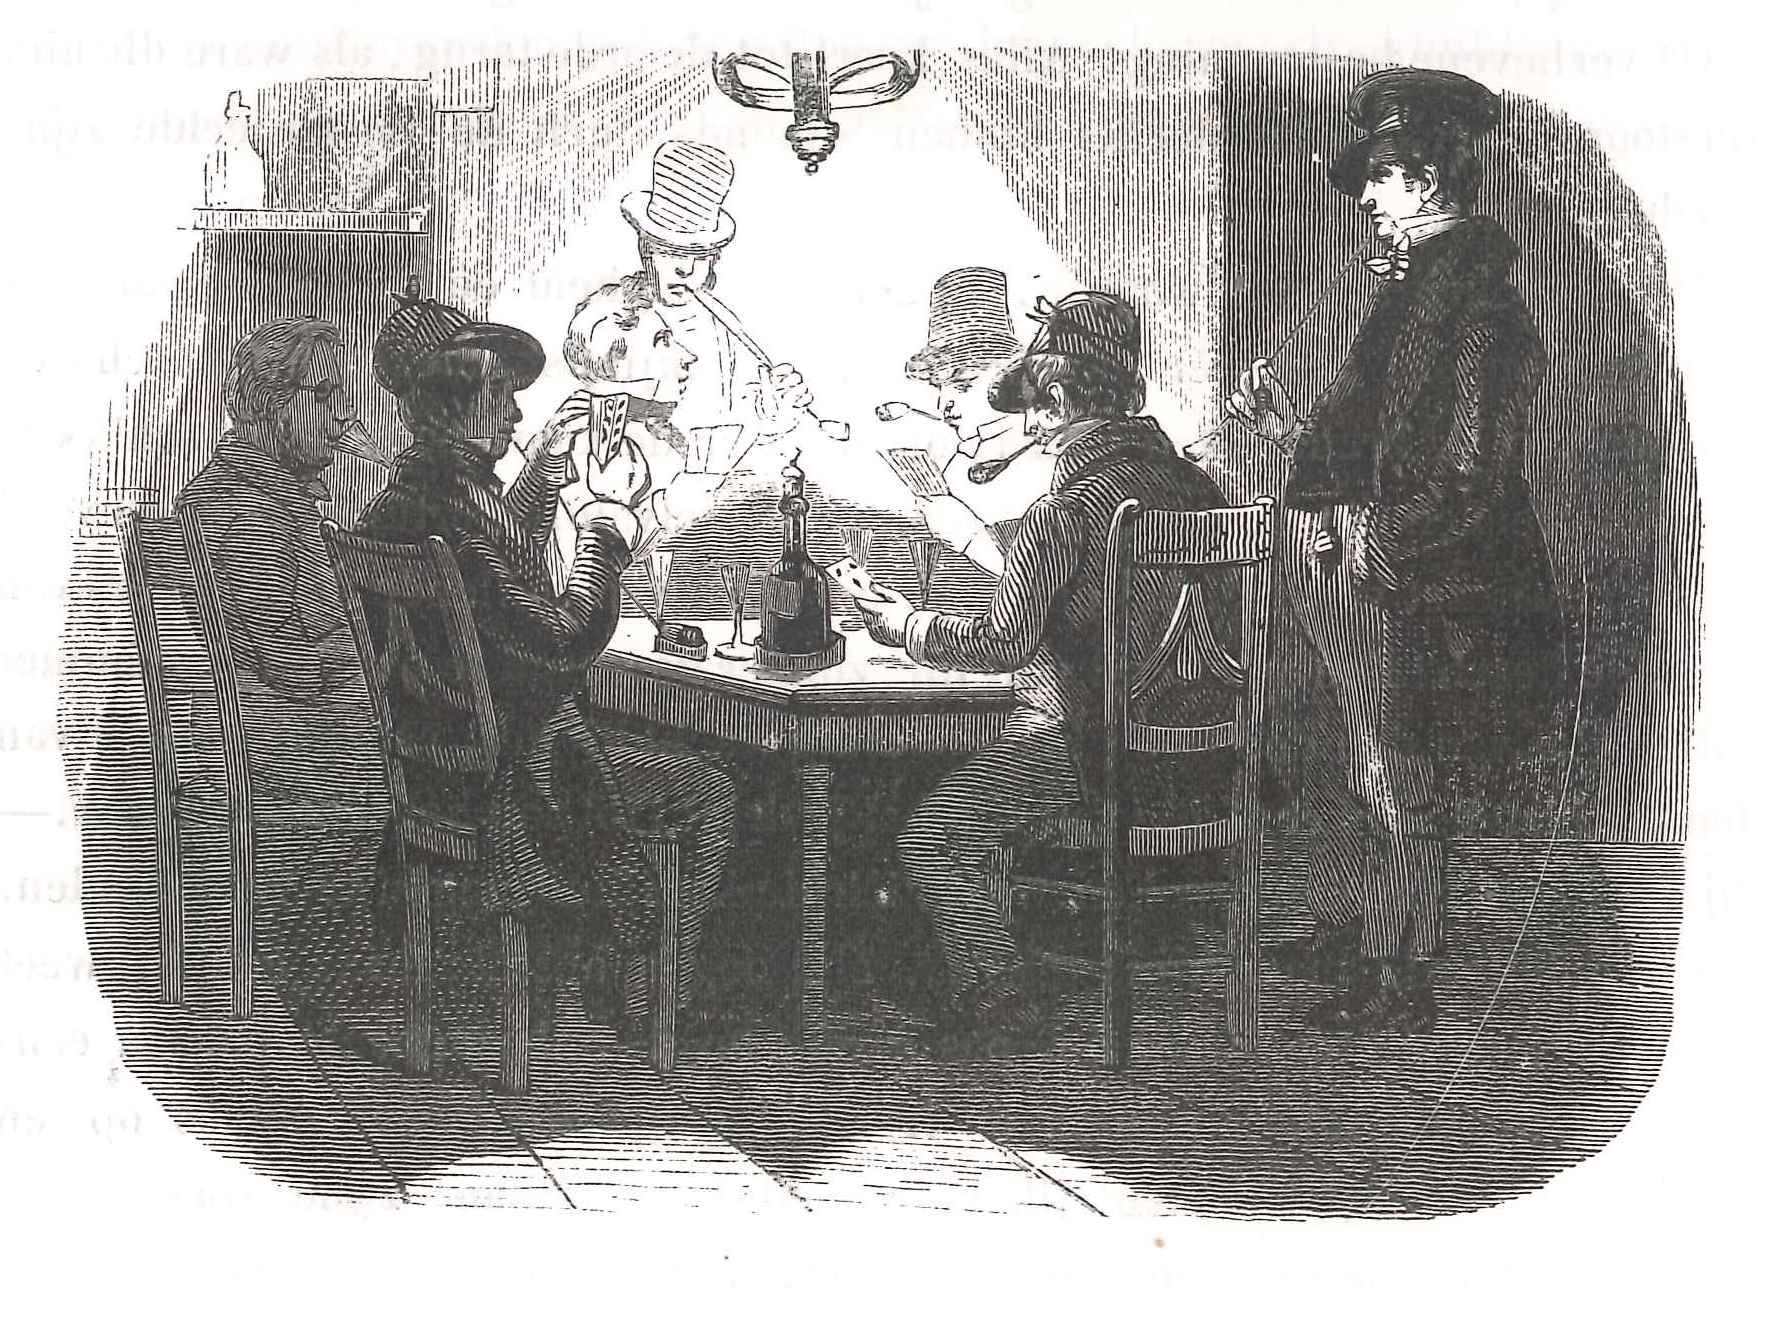  Interieur van een koffiehuis. 'Karakterschetsen', 1841. HMDB.